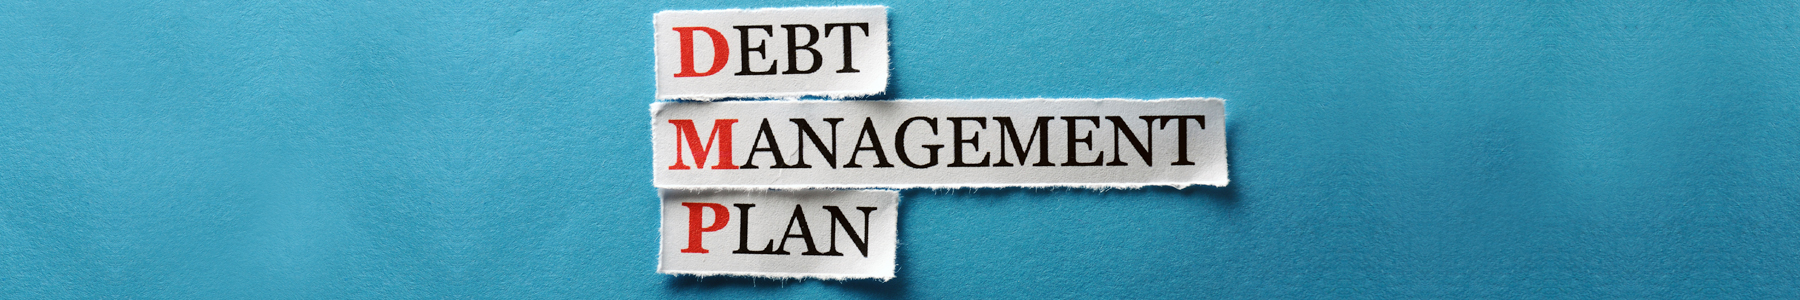 Seeking Debt Management Advice